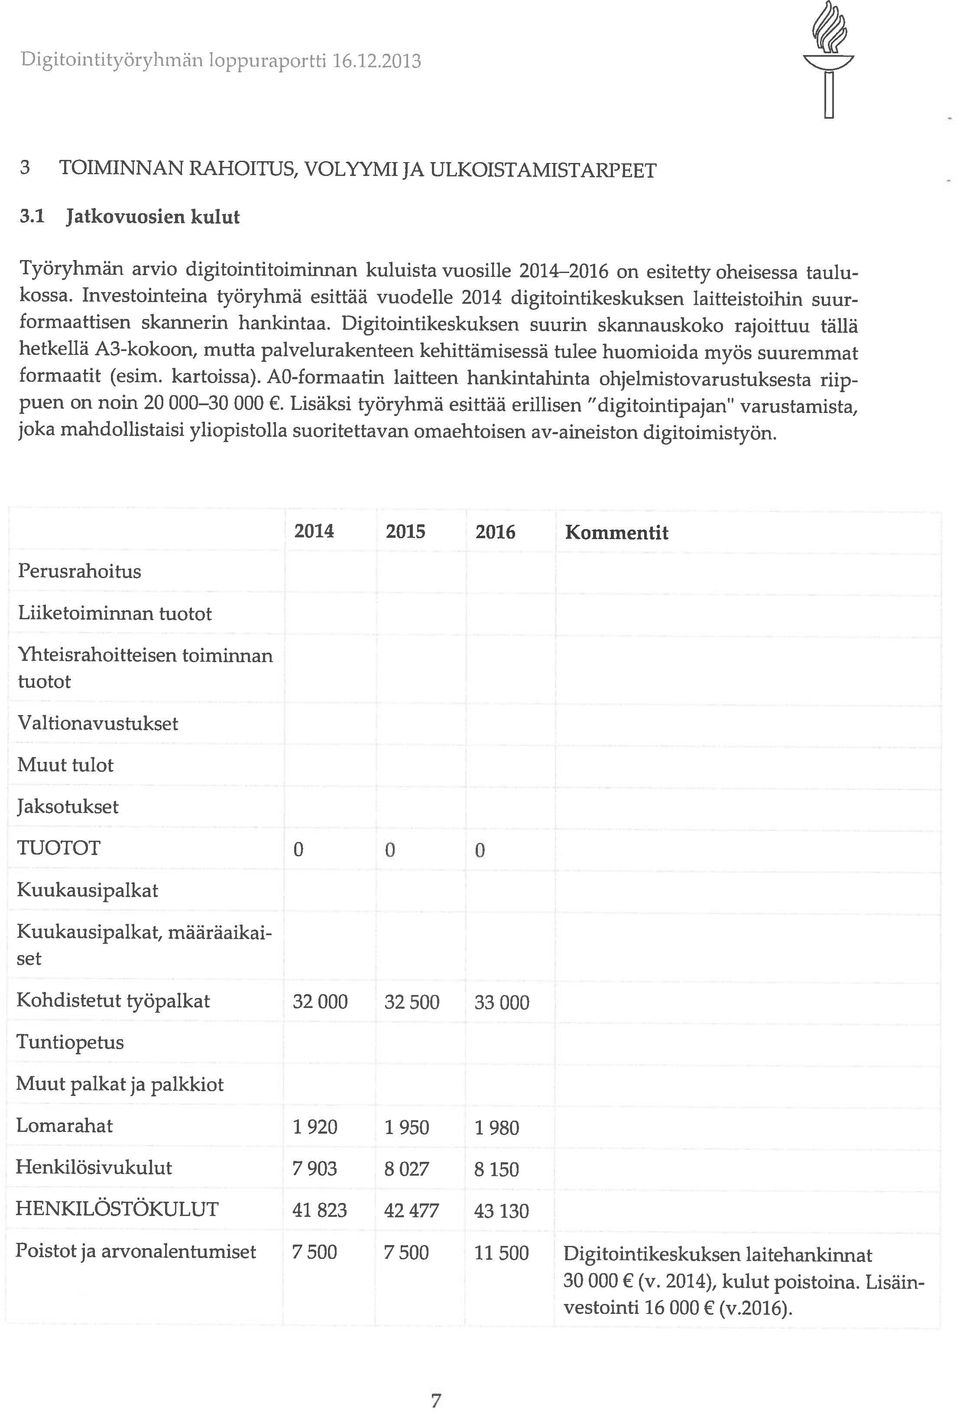 1 Jatkovuosien kulut 3 TOIMINNAN RAHOITUS, VOLYYMI JA ULKOISTAMISTARPEET 7 vestointi 16 000 (v.2016). 30 000 (v. 2014), kulut poistoina.